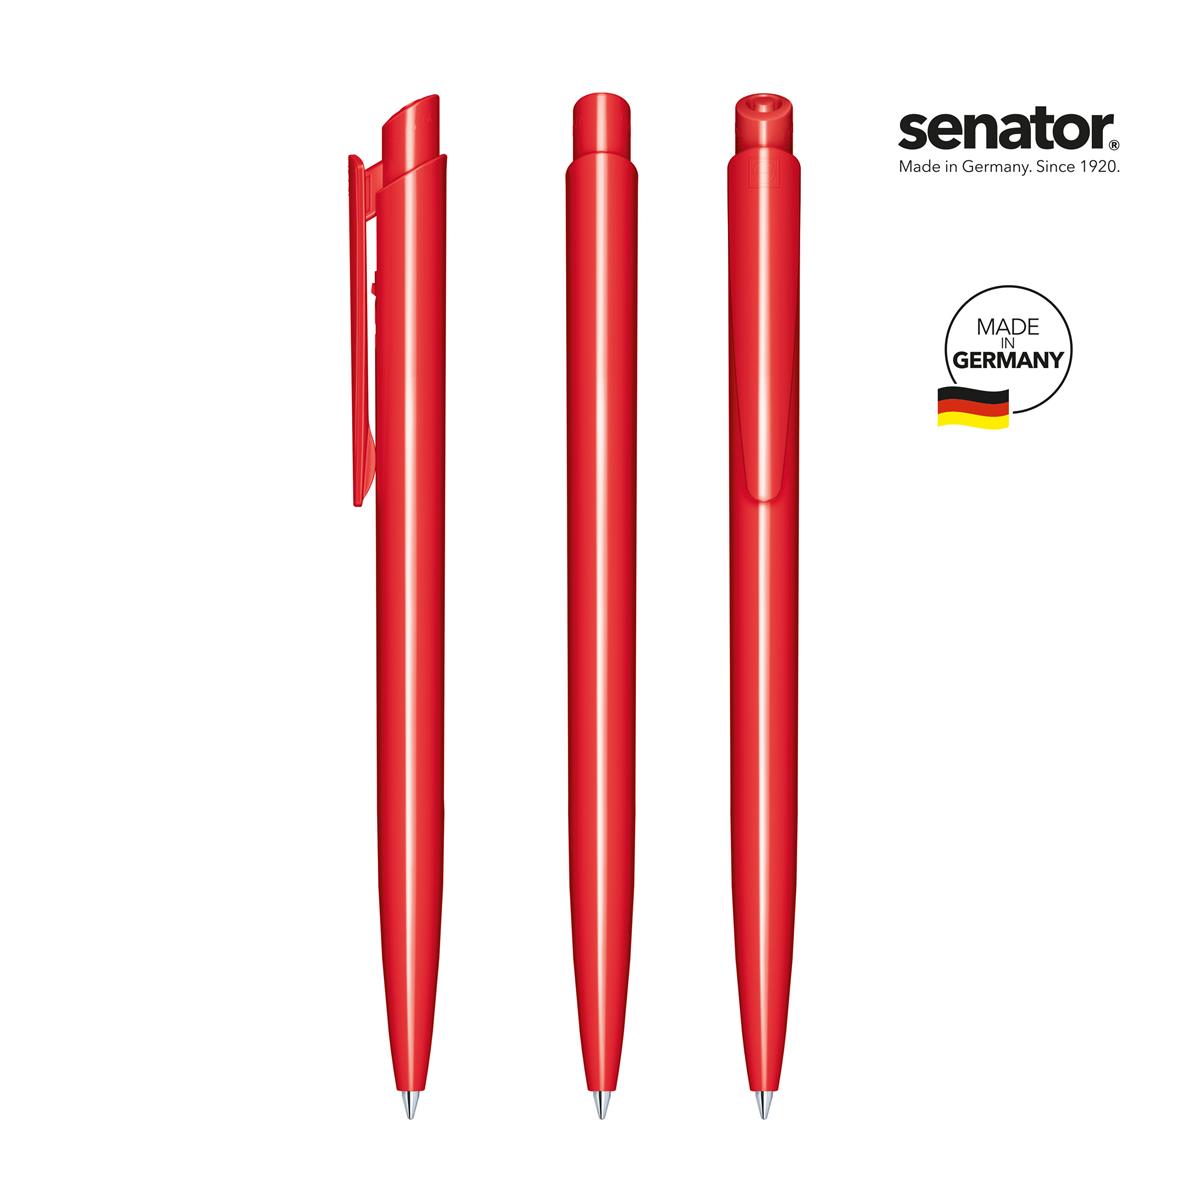 2600-senator-dart-polished-pms-186-5-p